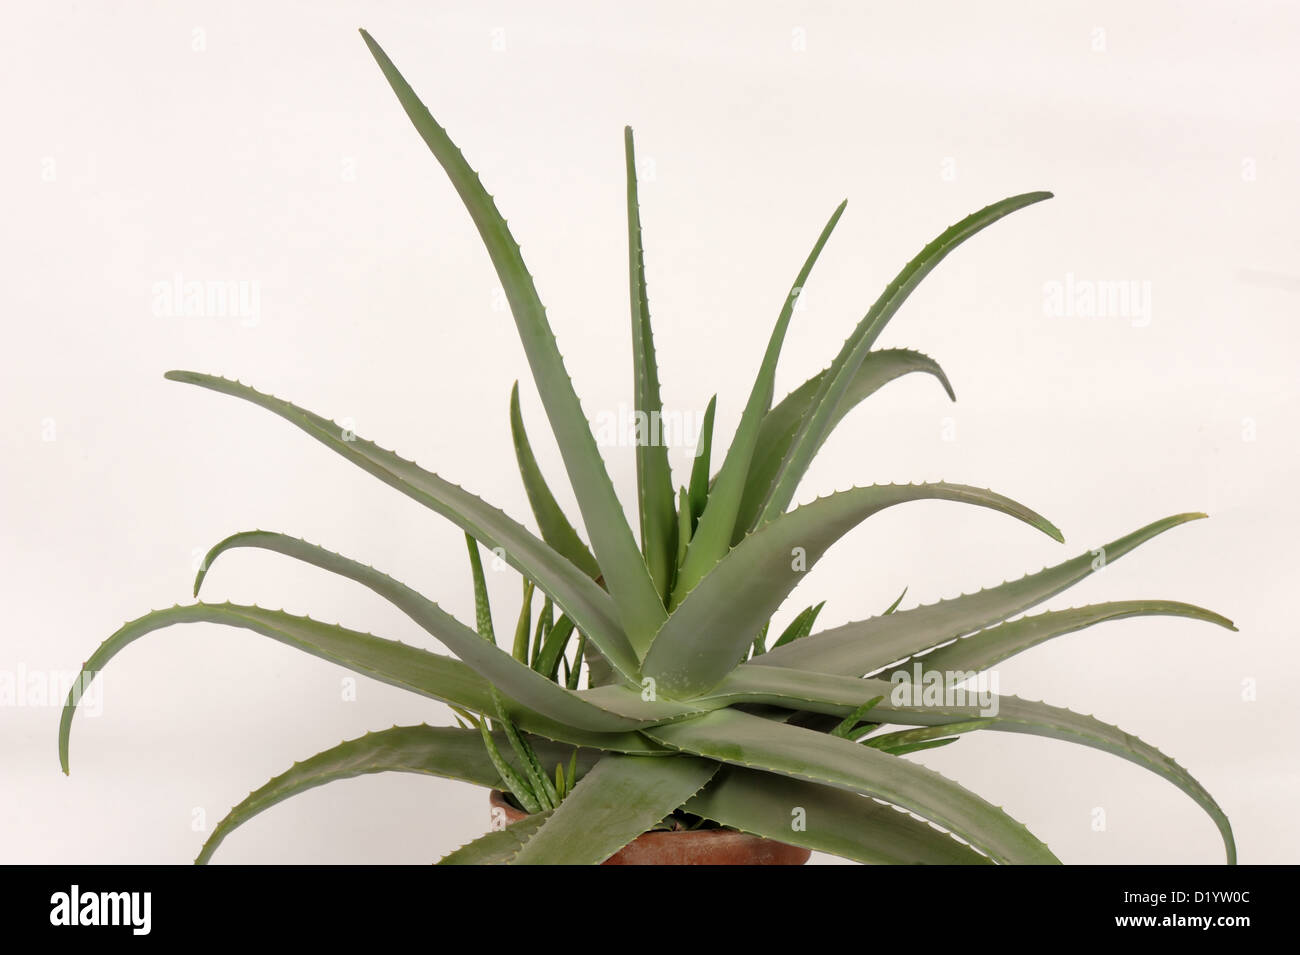 Aloe vera pot planta carnosa con hojas suculentas ornamental y medicinal Foto de stock